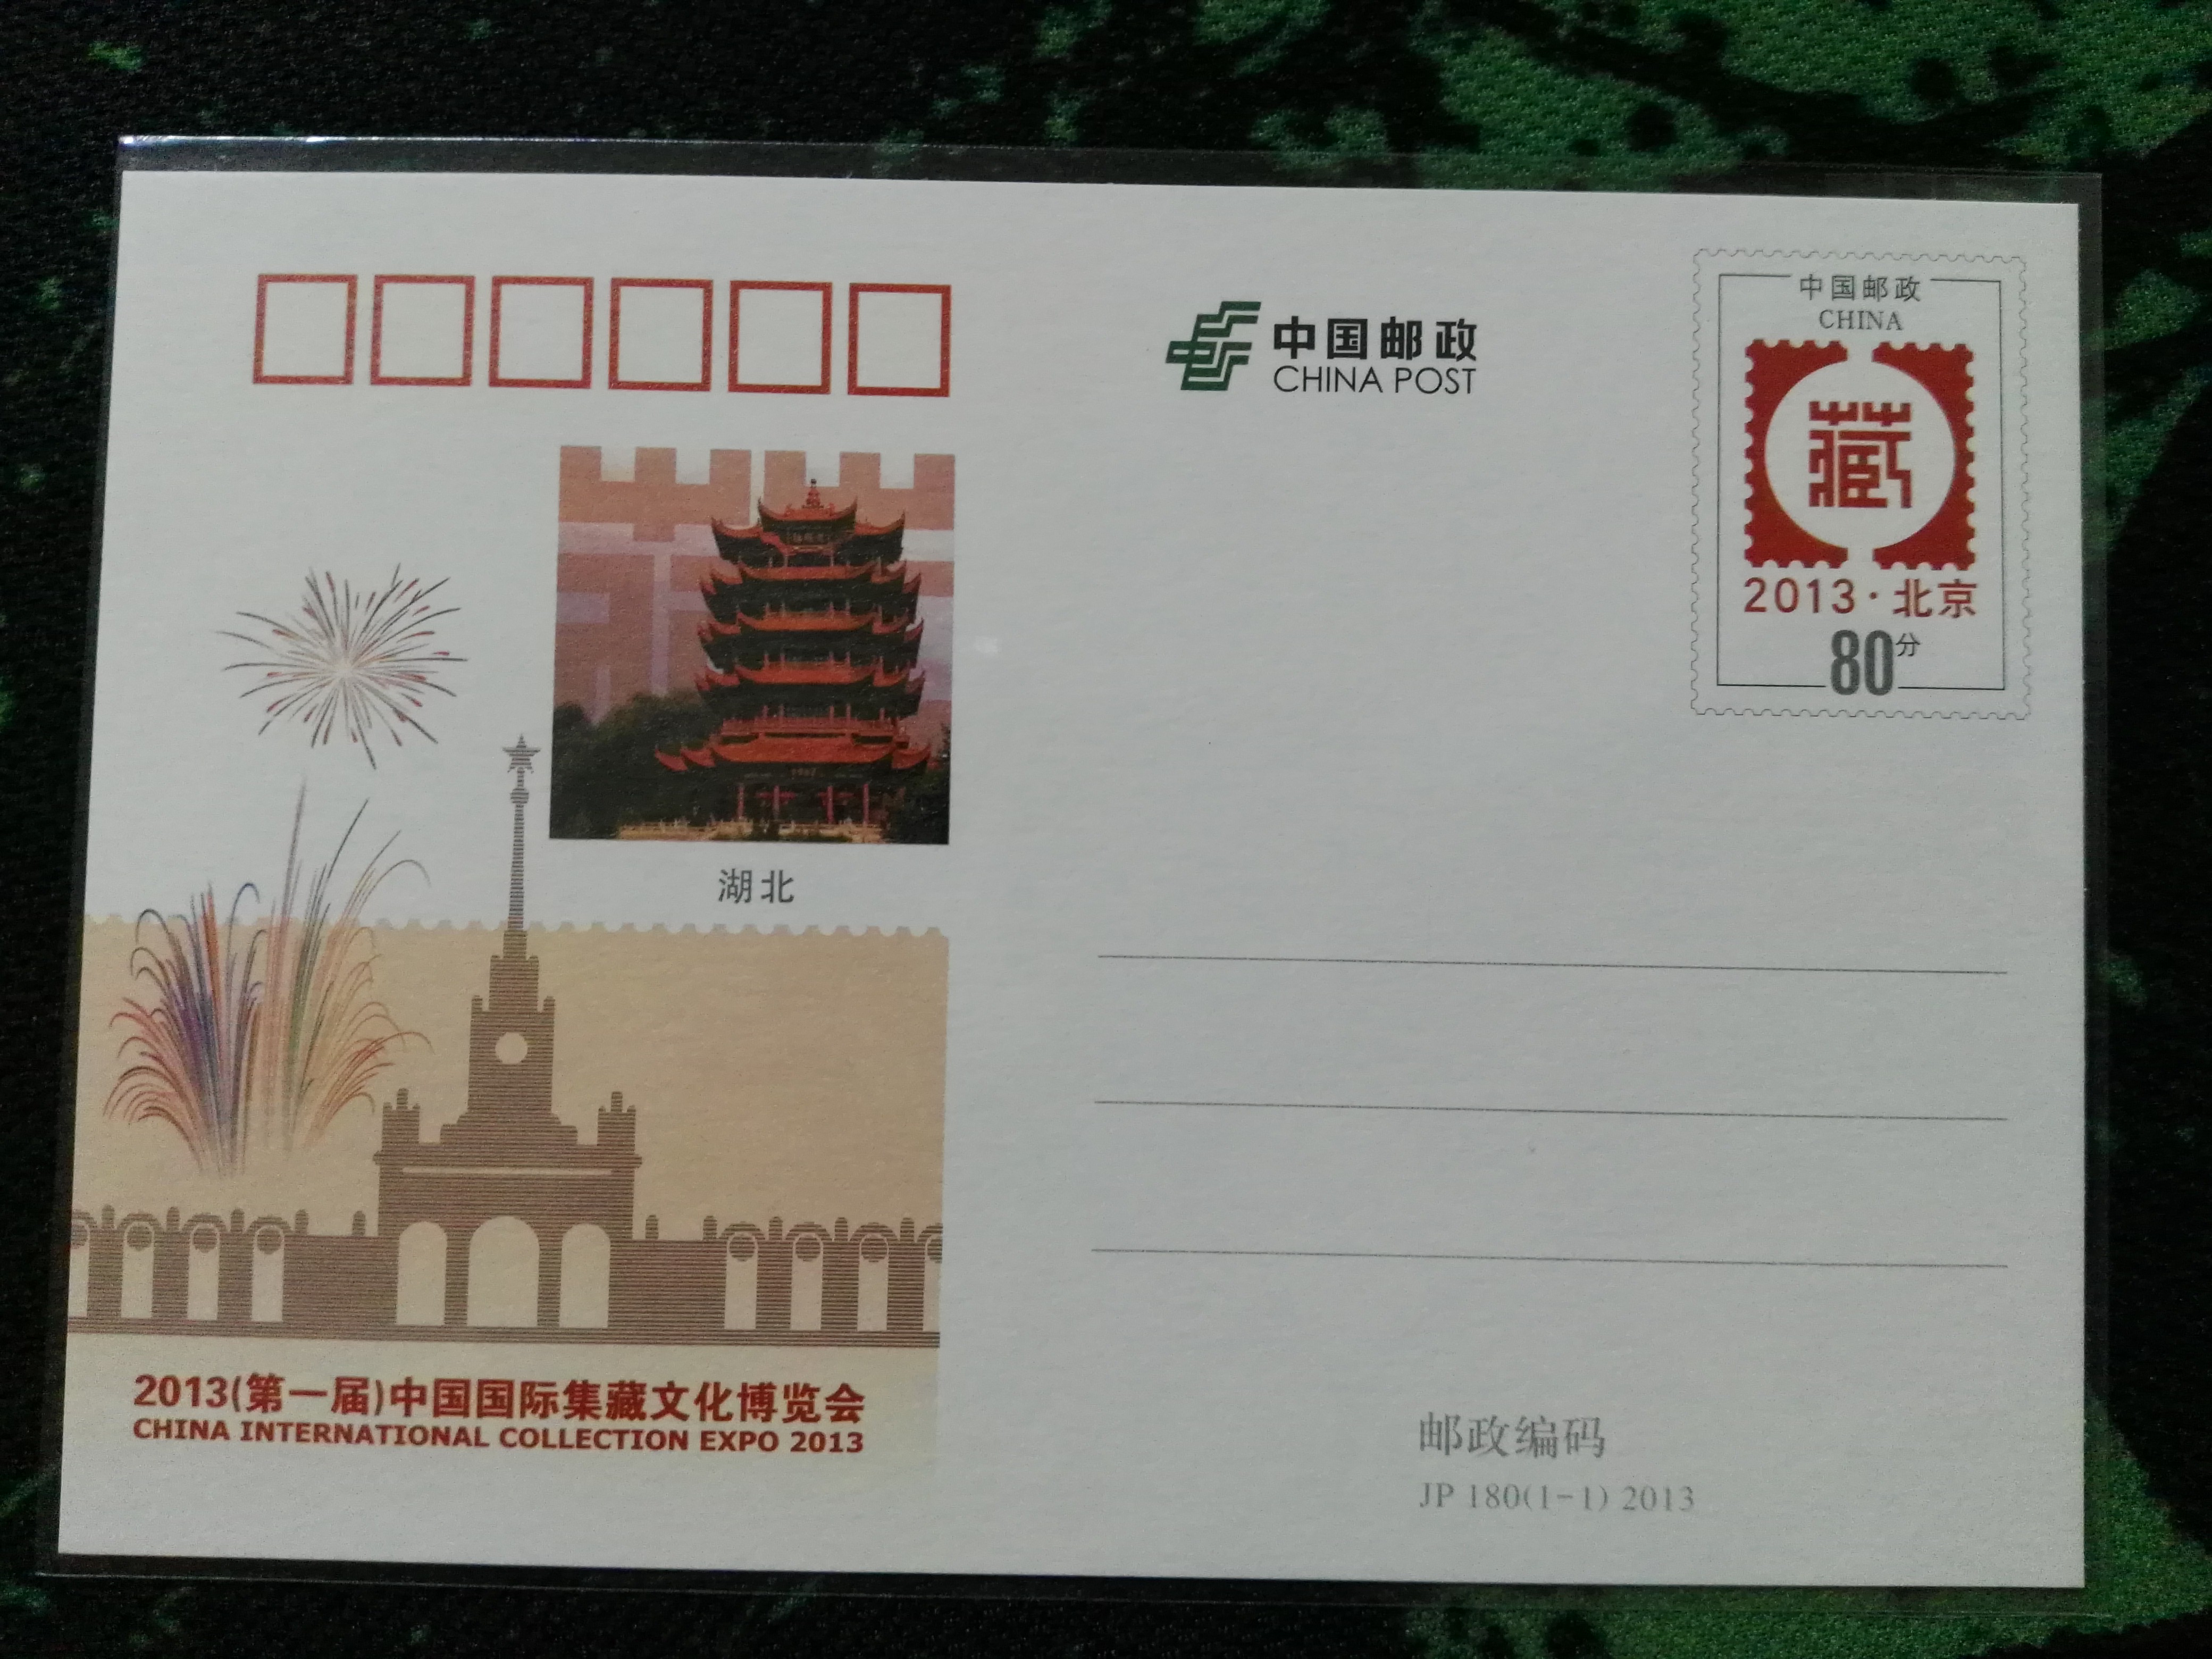 JP180 2013第一届国际集藏文化博览会邮资片加印特殊版【湖北】